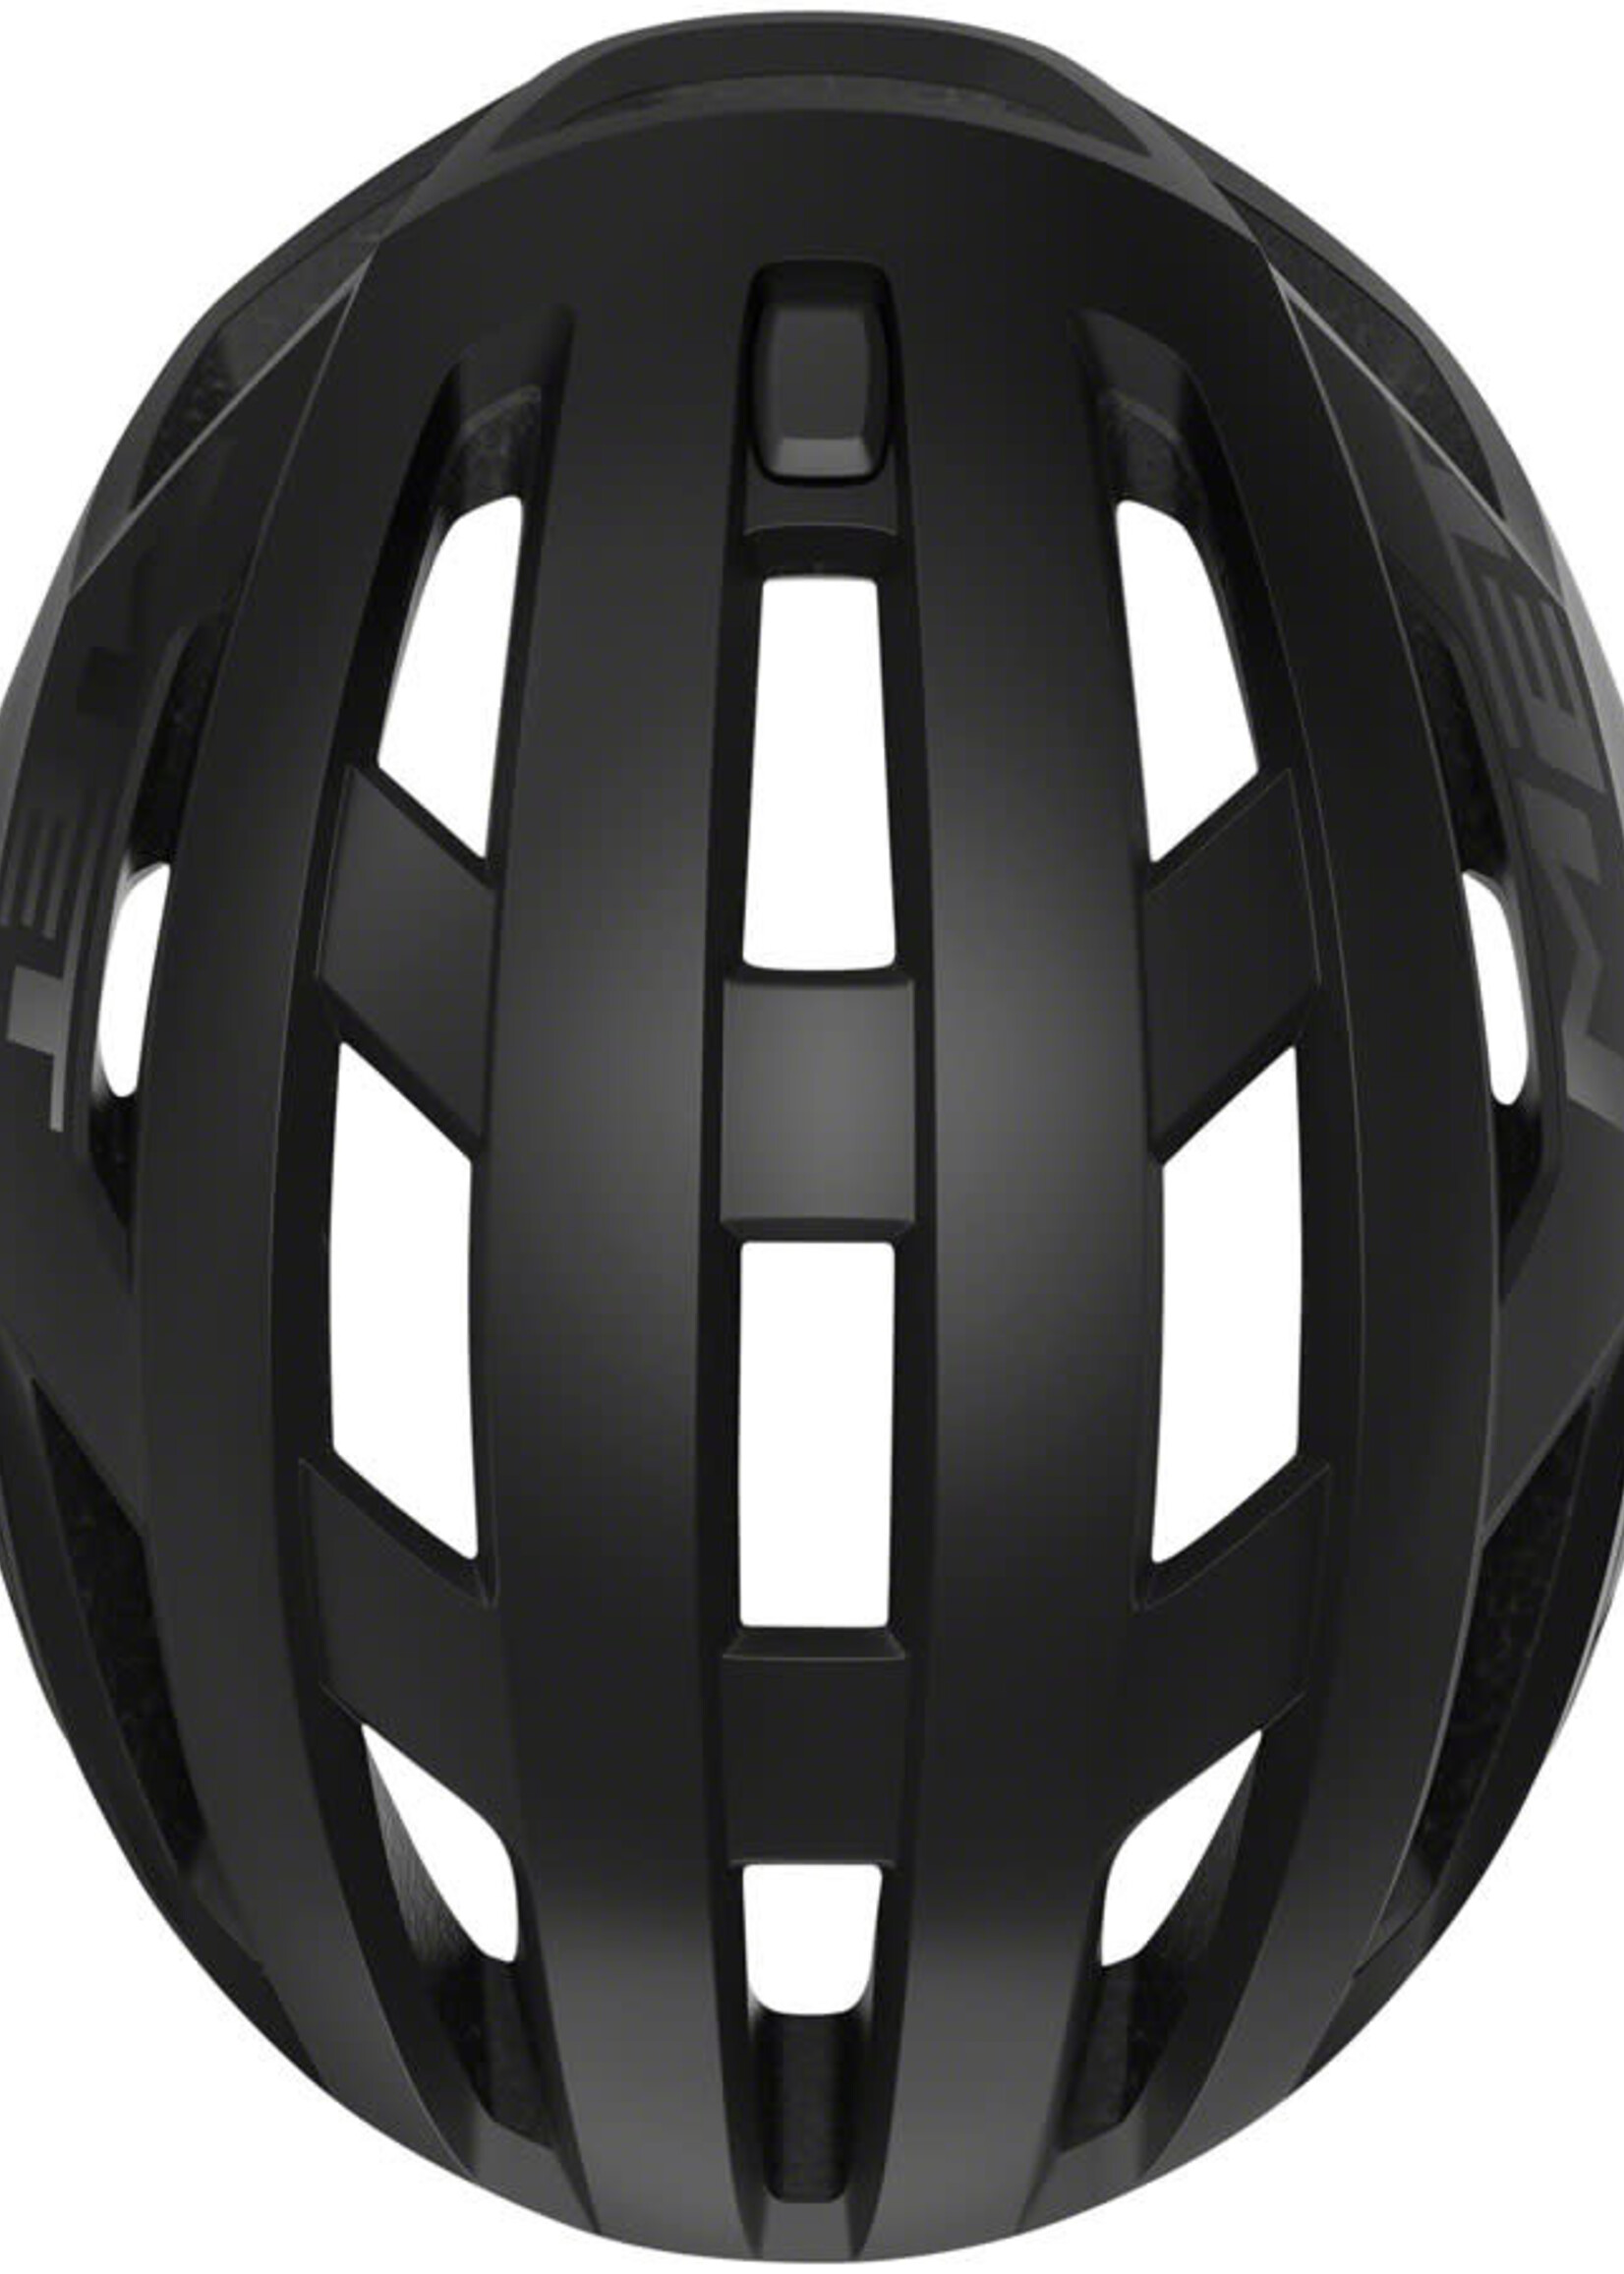 MET Helmets MET Vinci MIPS Helmet - Black Matte Small